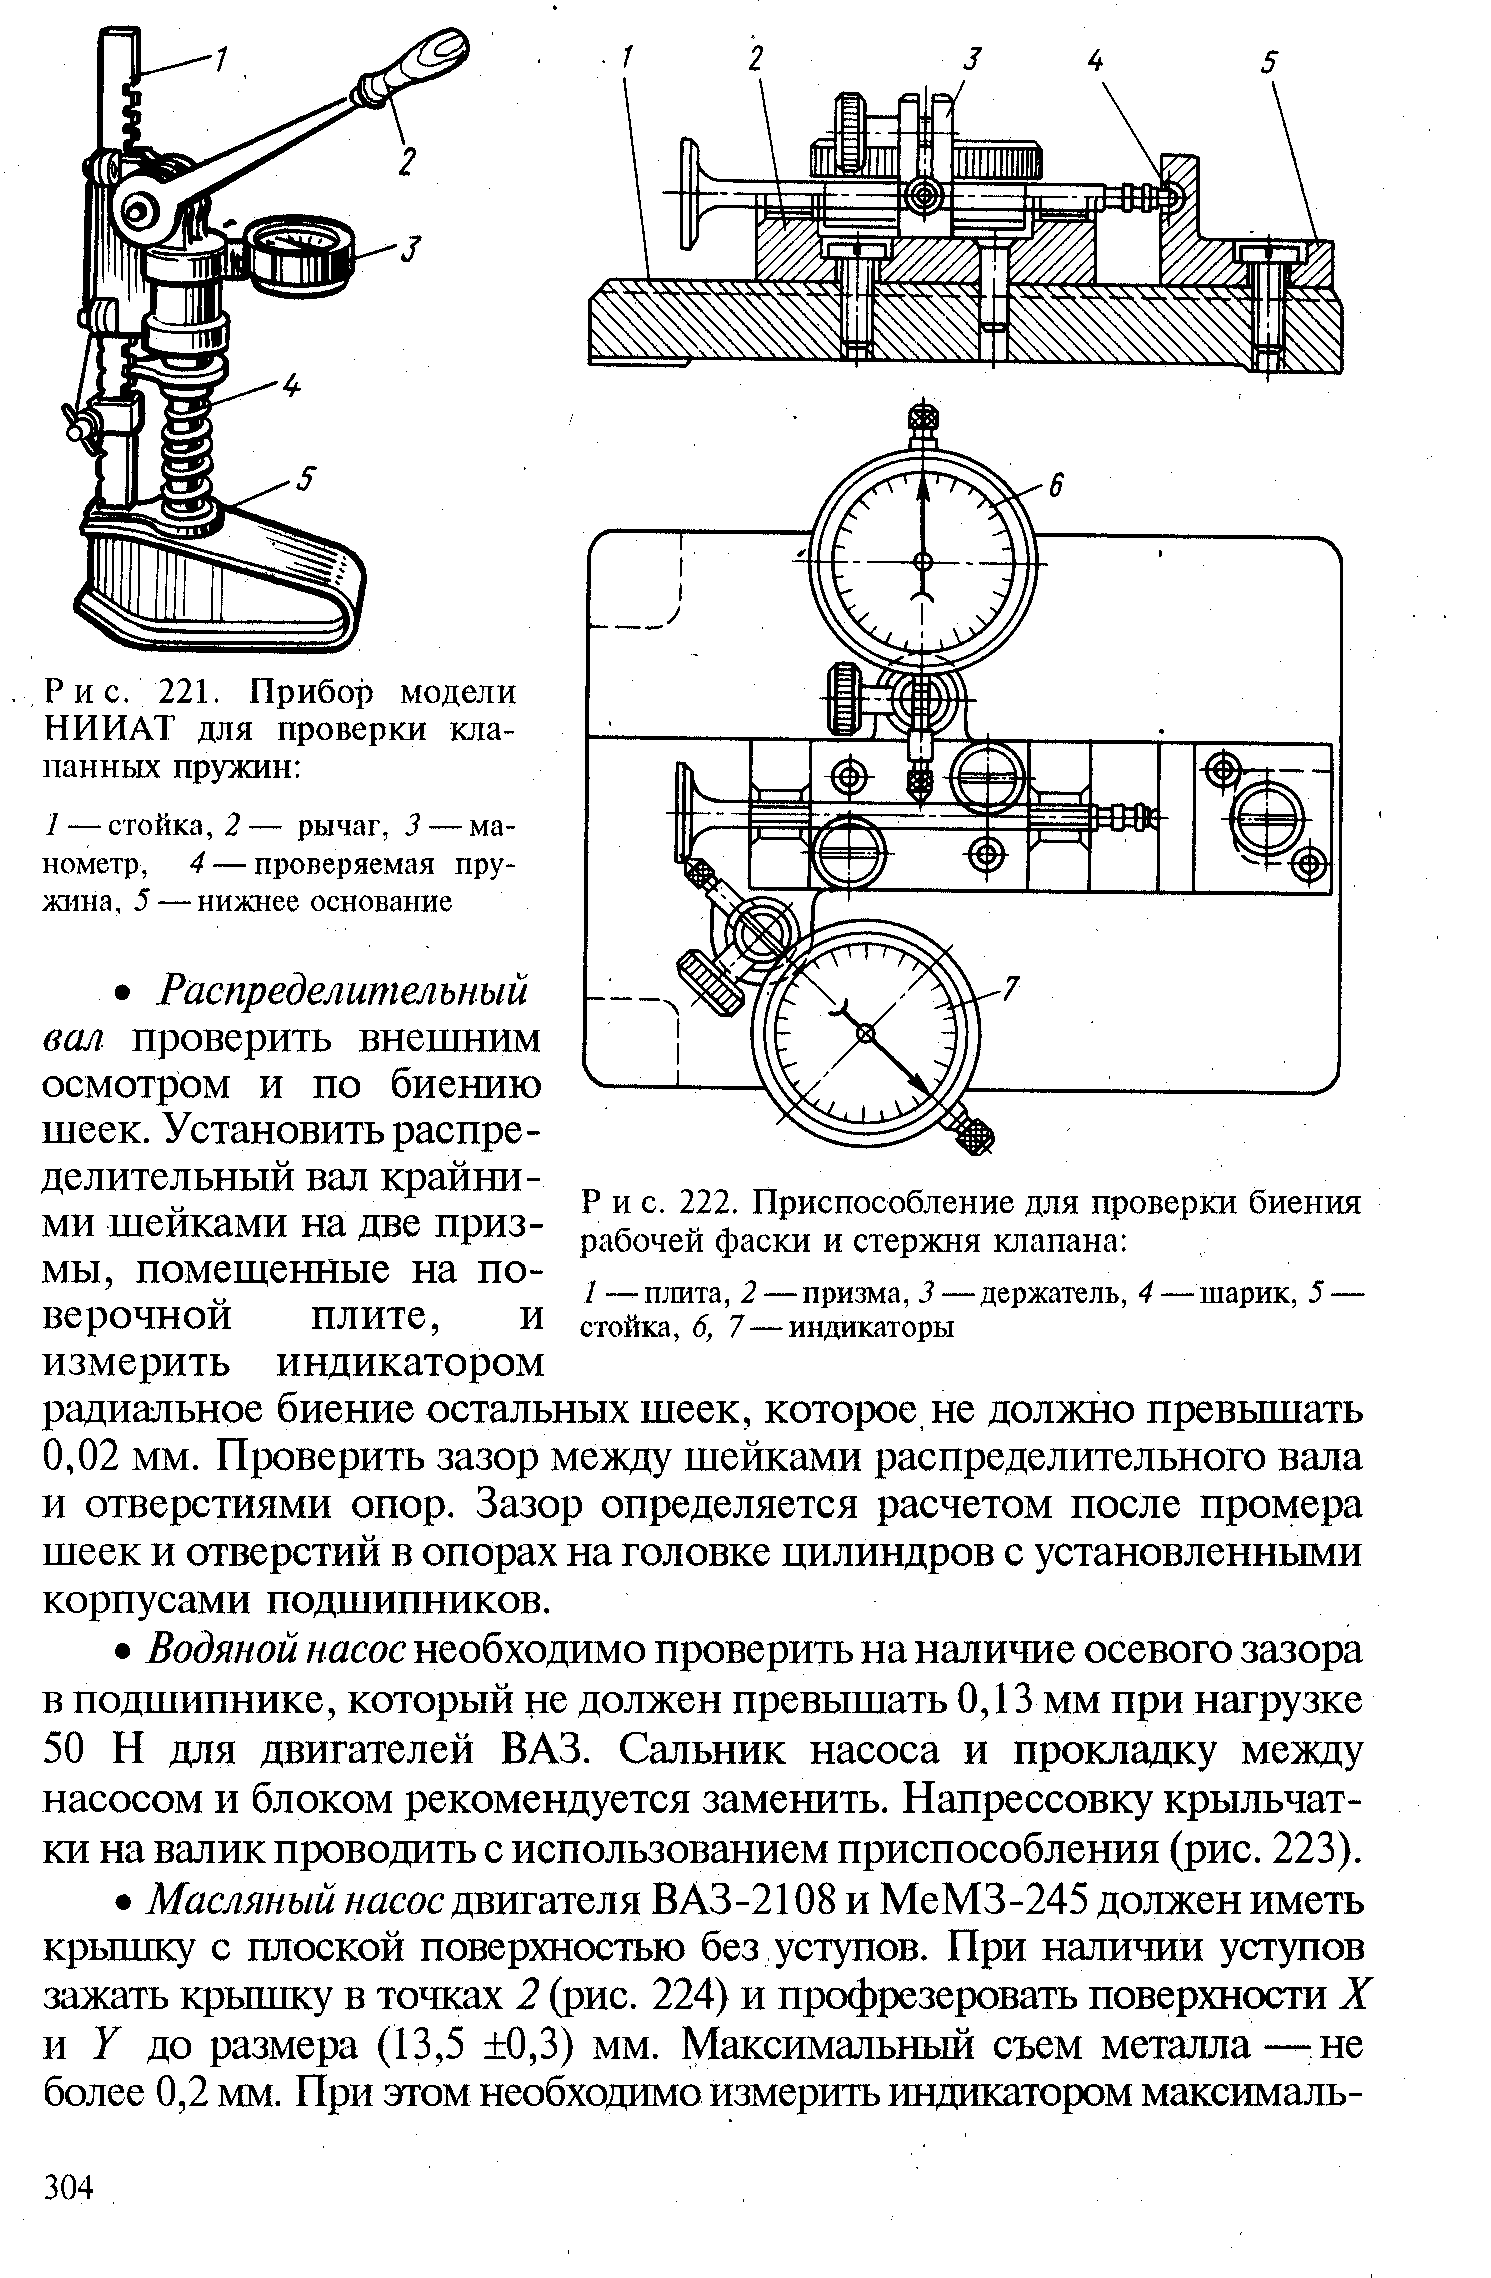 Рис. 221. Прибор модели НИИАТ для проверки клапанных пружин 
